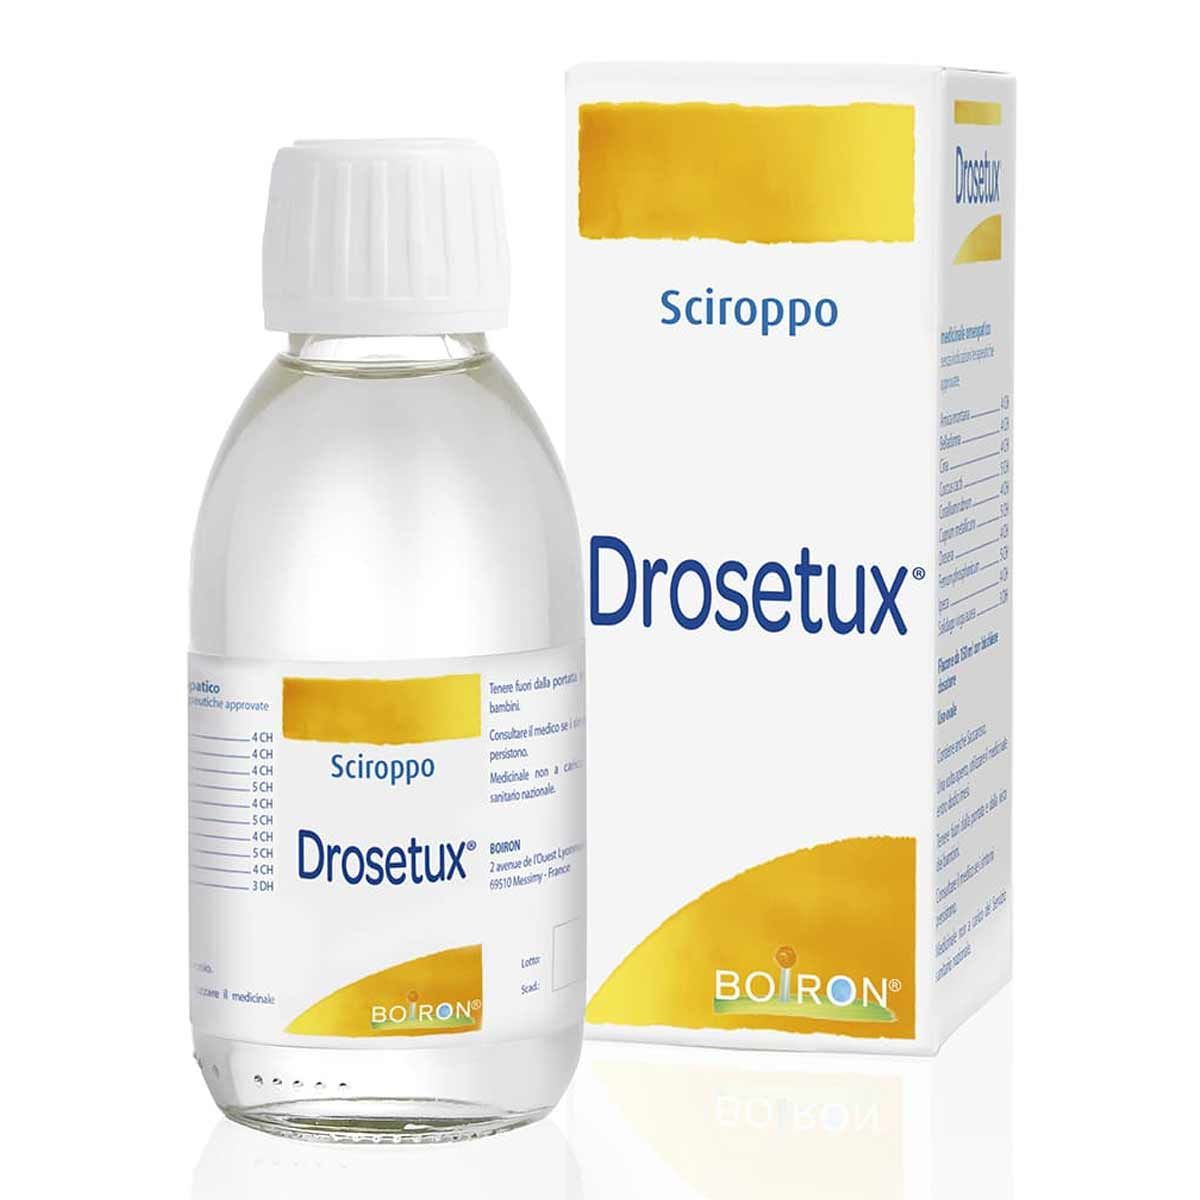 Boiron Drosetux Sciroppo 150ml